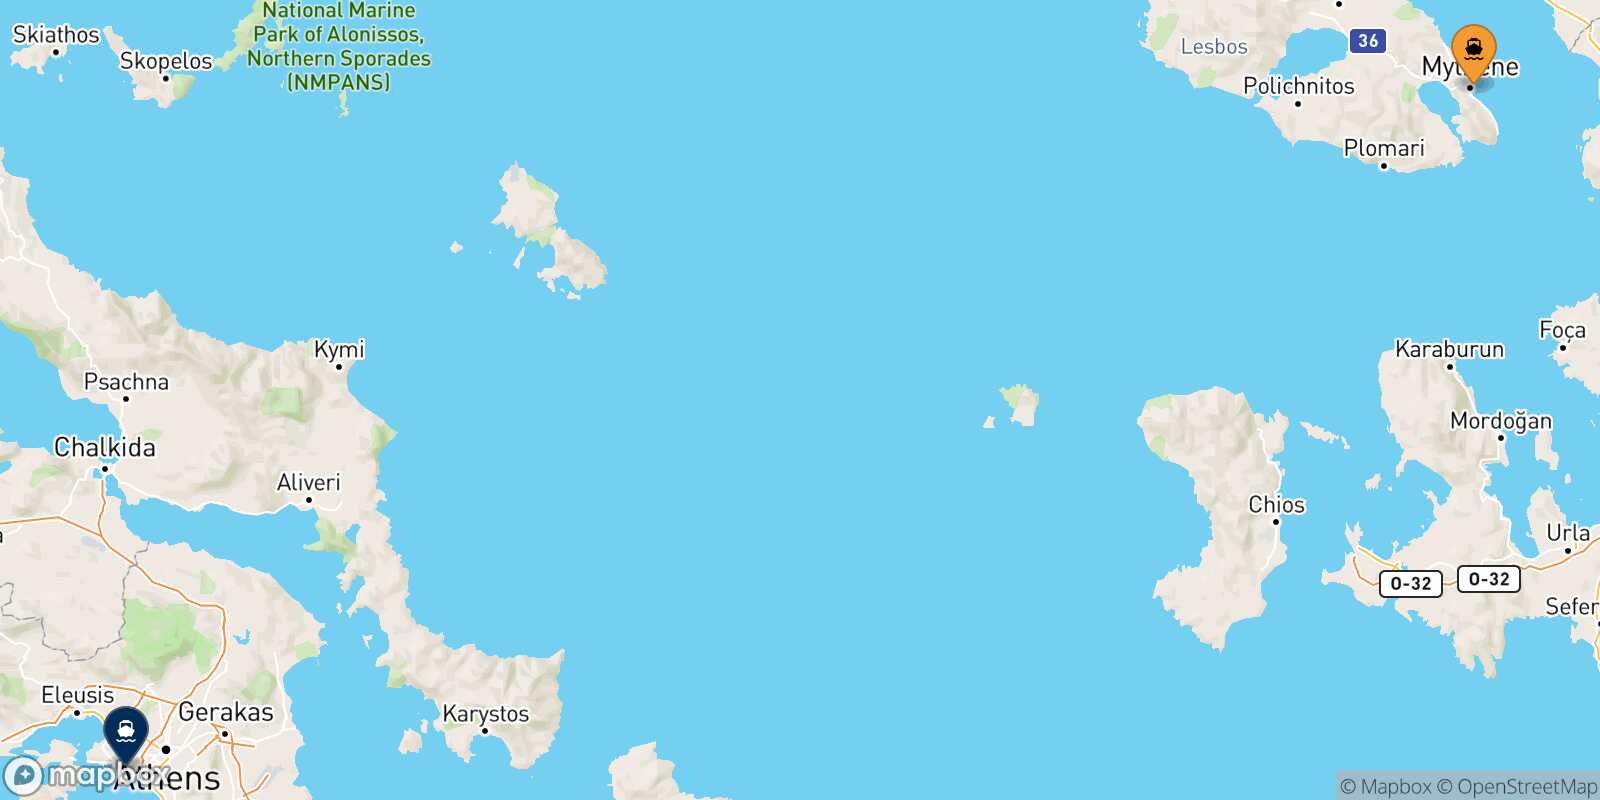 Mappa della rotta Mitilini (Lesvos) Pireo